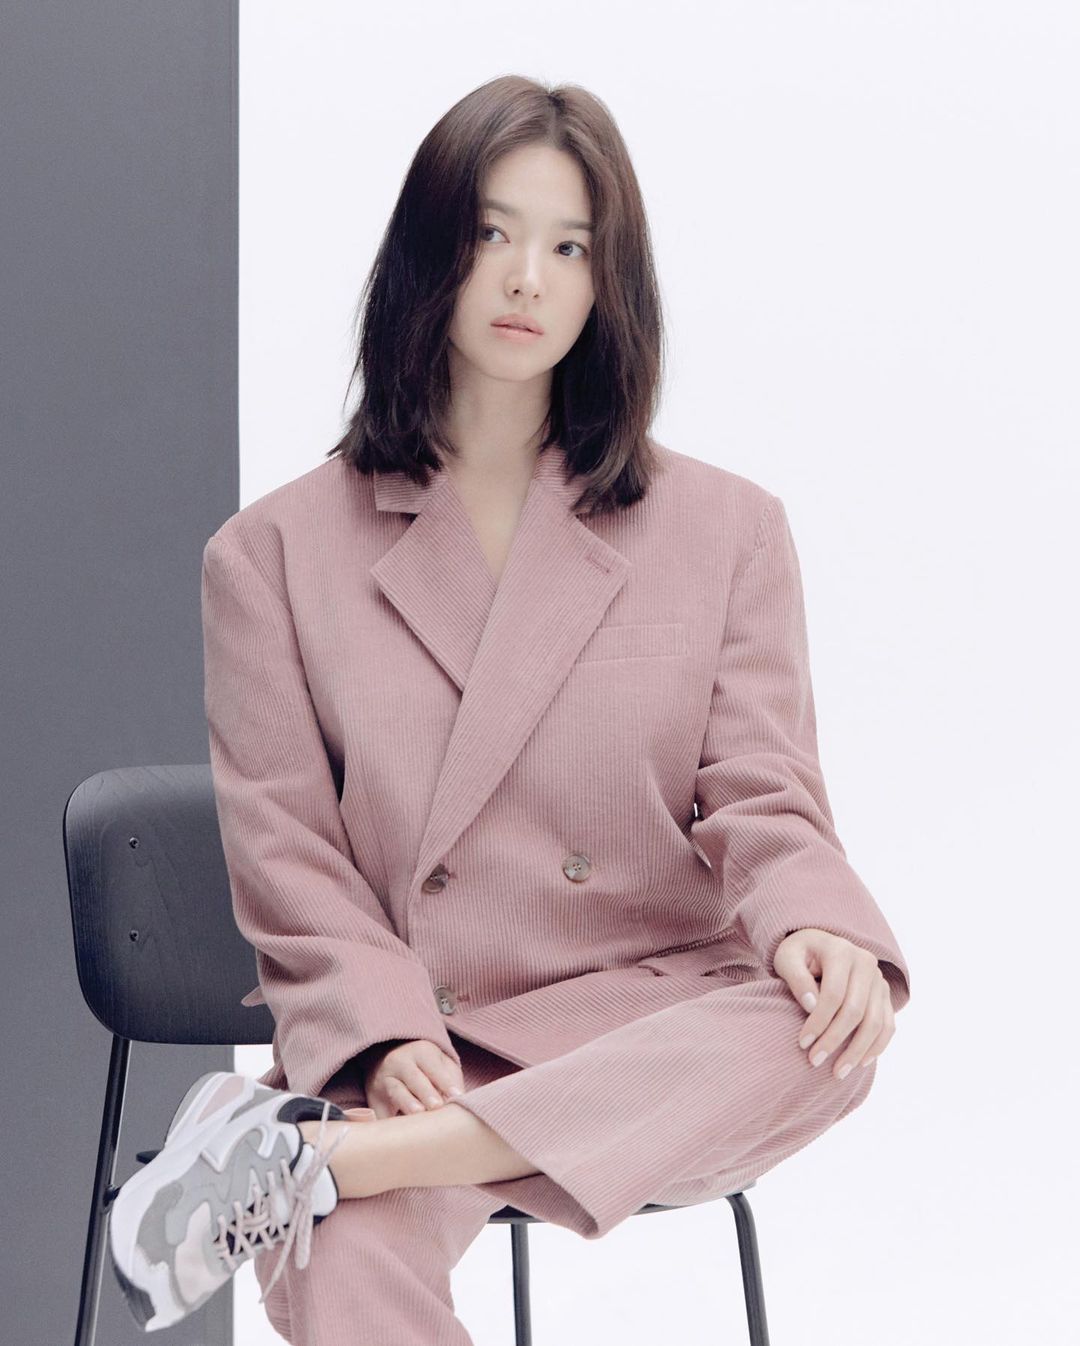 6 kiểu tóc xuất sắc nhất của Song Hye Kyo, chị em U30 'đu' theo thì nhan sắc dễ thăng hạng trong nháy mắt - Ảnh 7